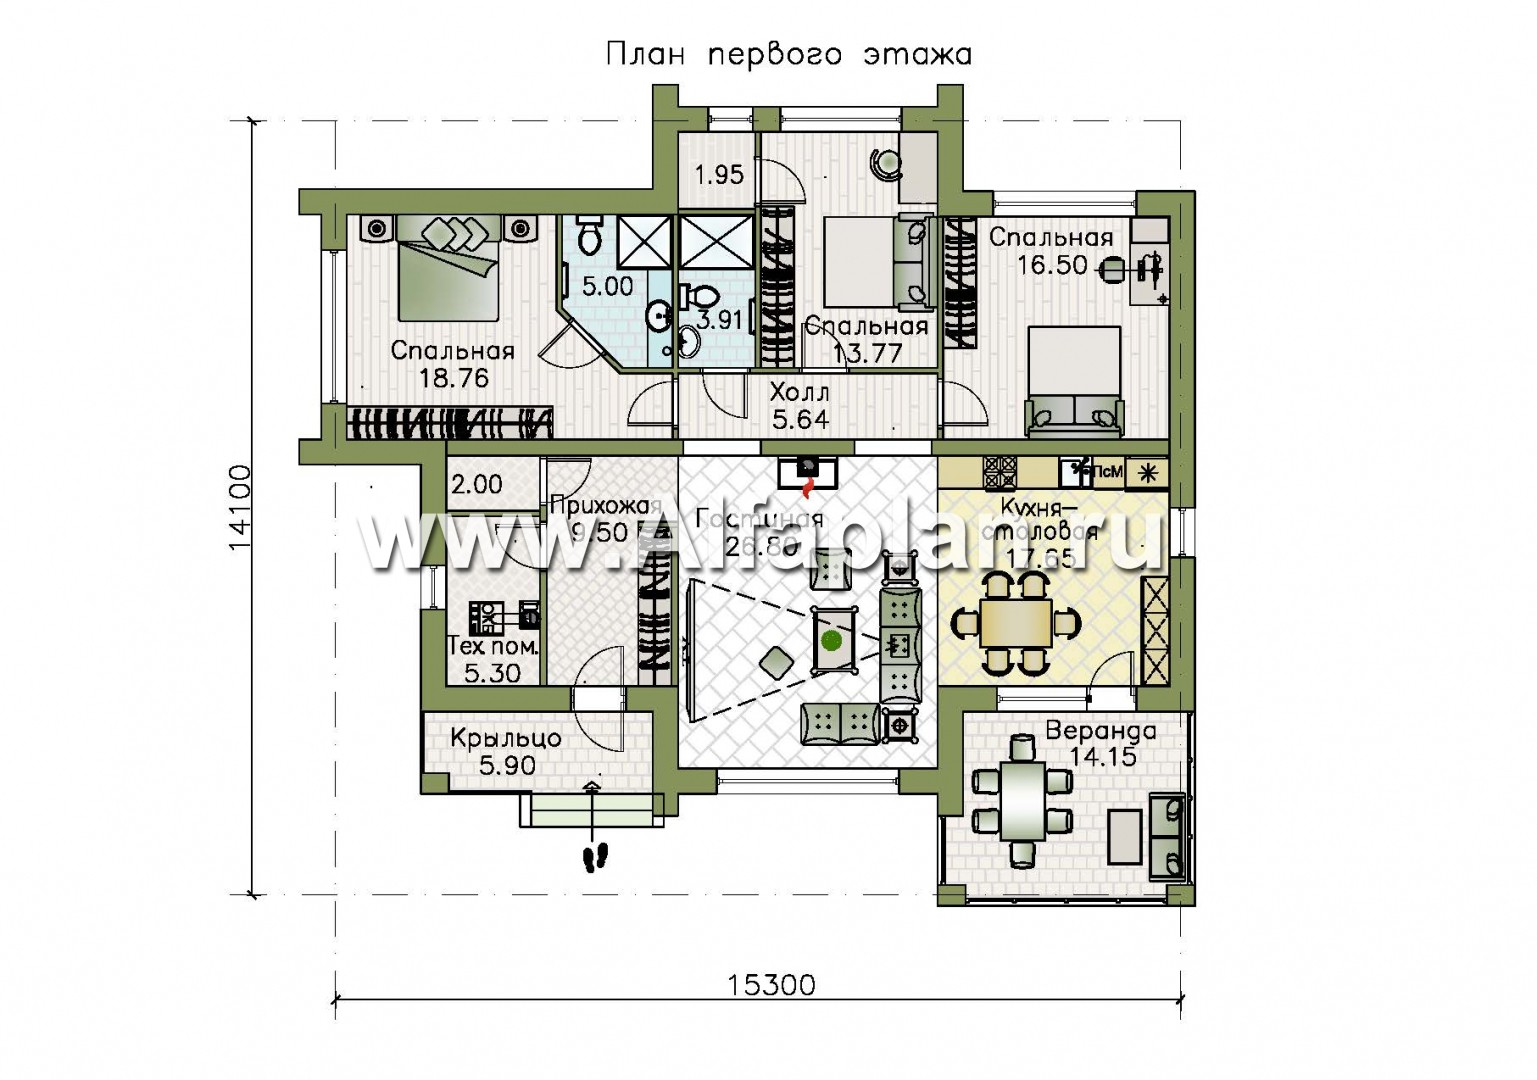 «Магнолия» — красивый проект одноэтажного дома, планировка 3 спальни, современный стиль, фасад штукатурка - план дома